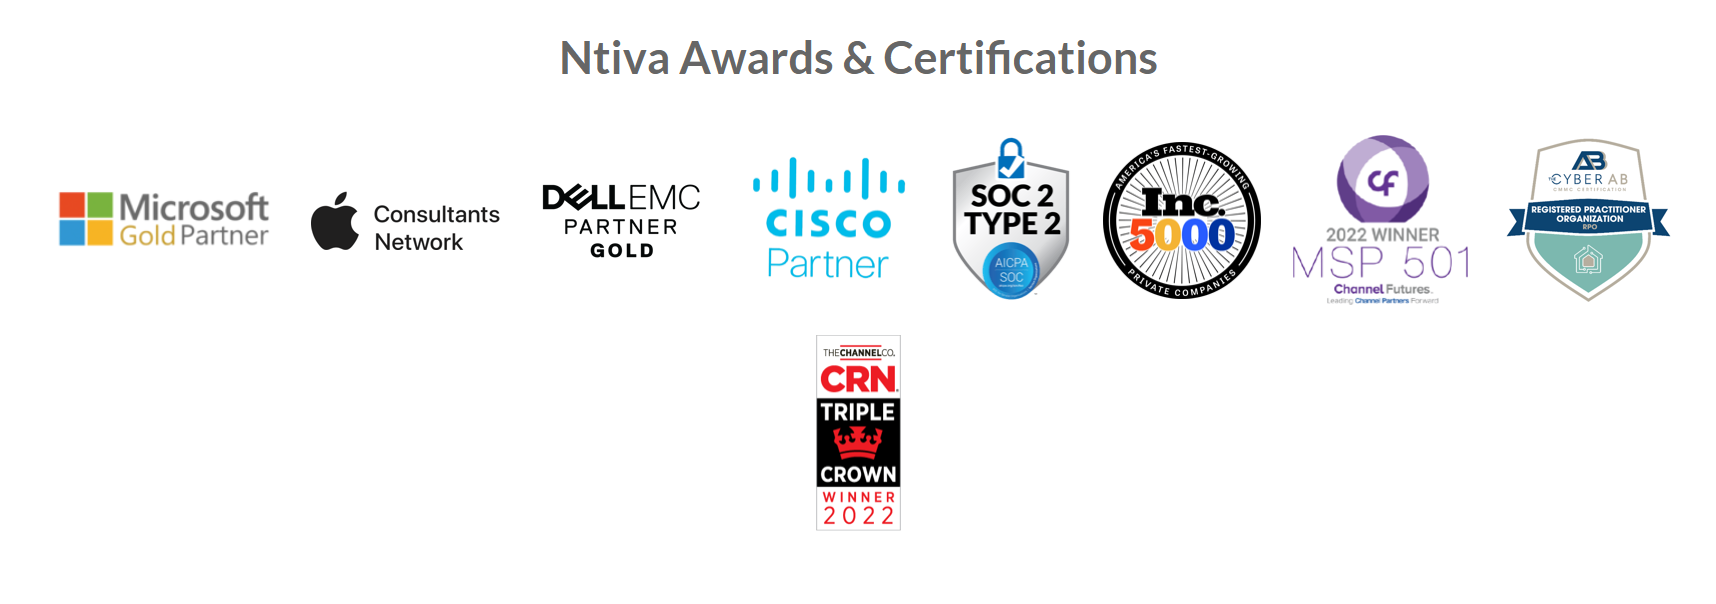 Ntiva Awards & Certifications